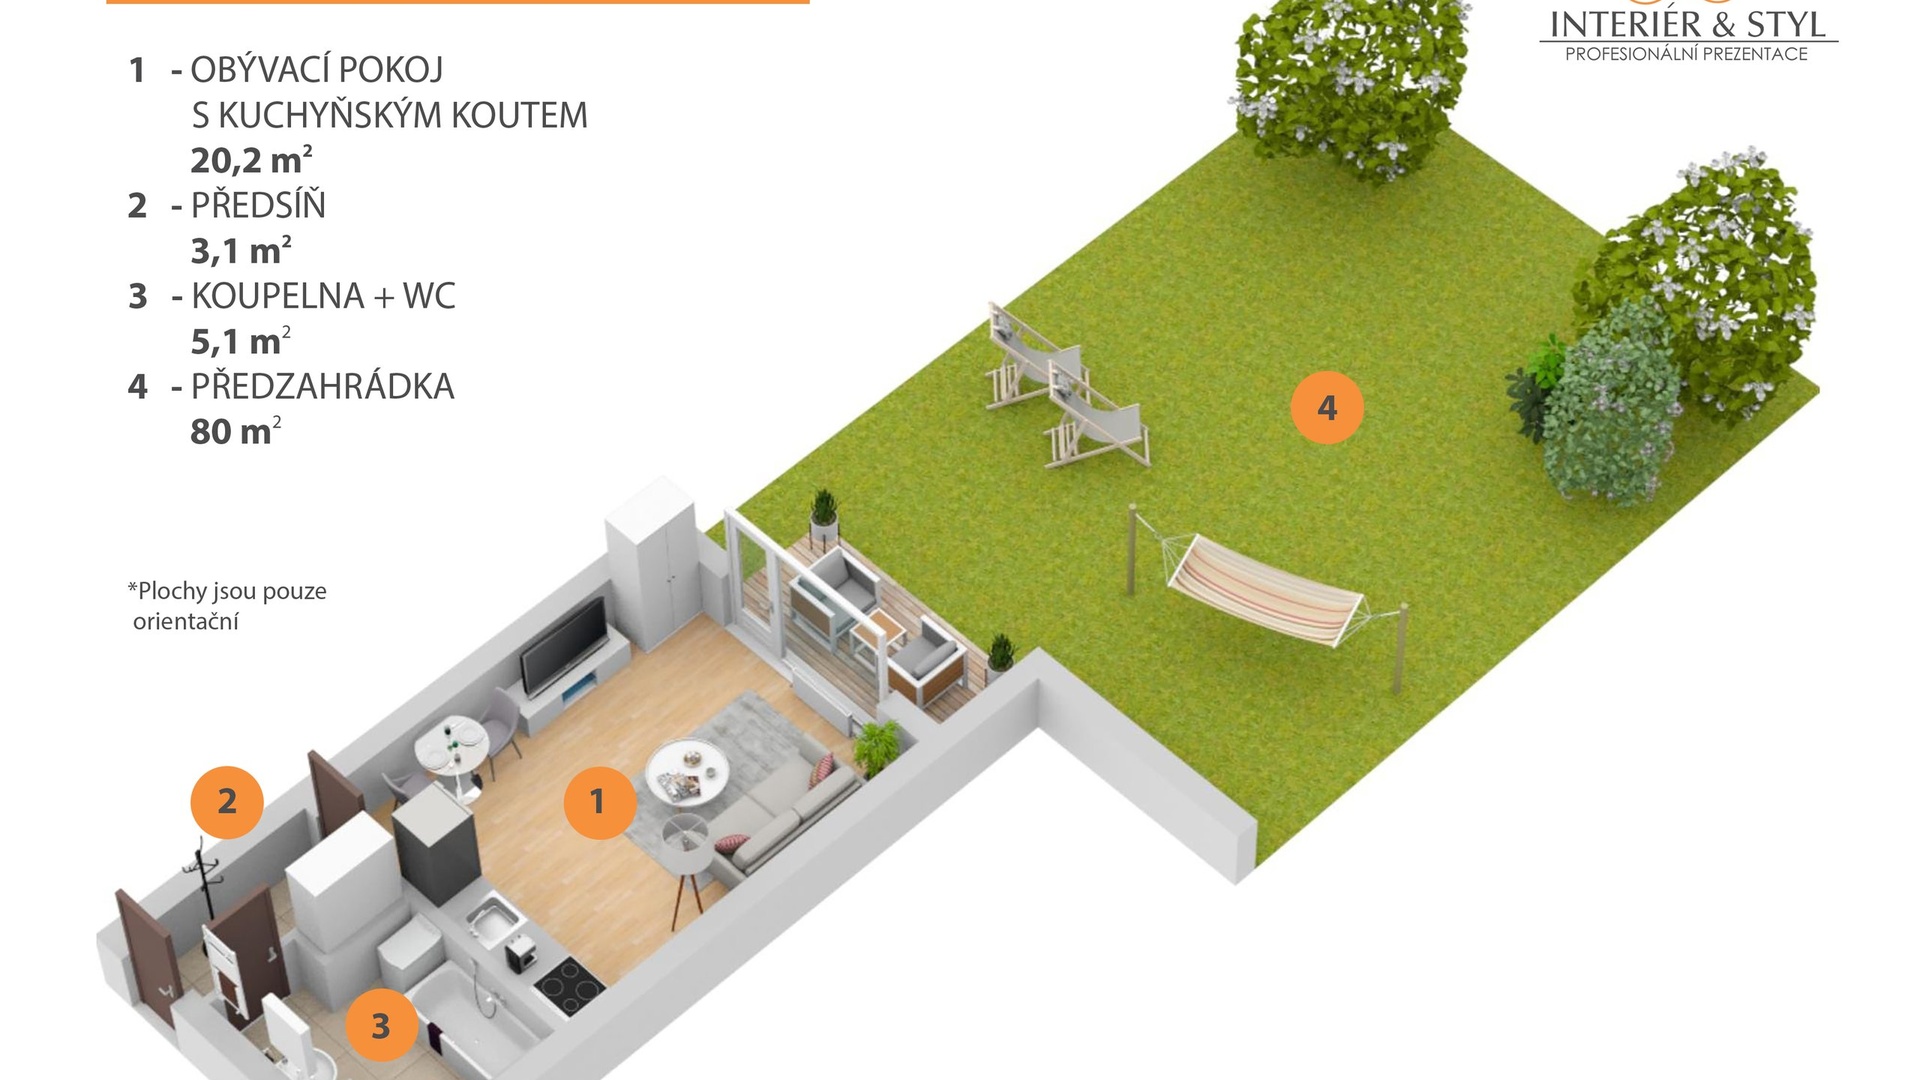 Pronájem bytu 1+kk se zahradou (30 m² + 80 m²) - Hostivice